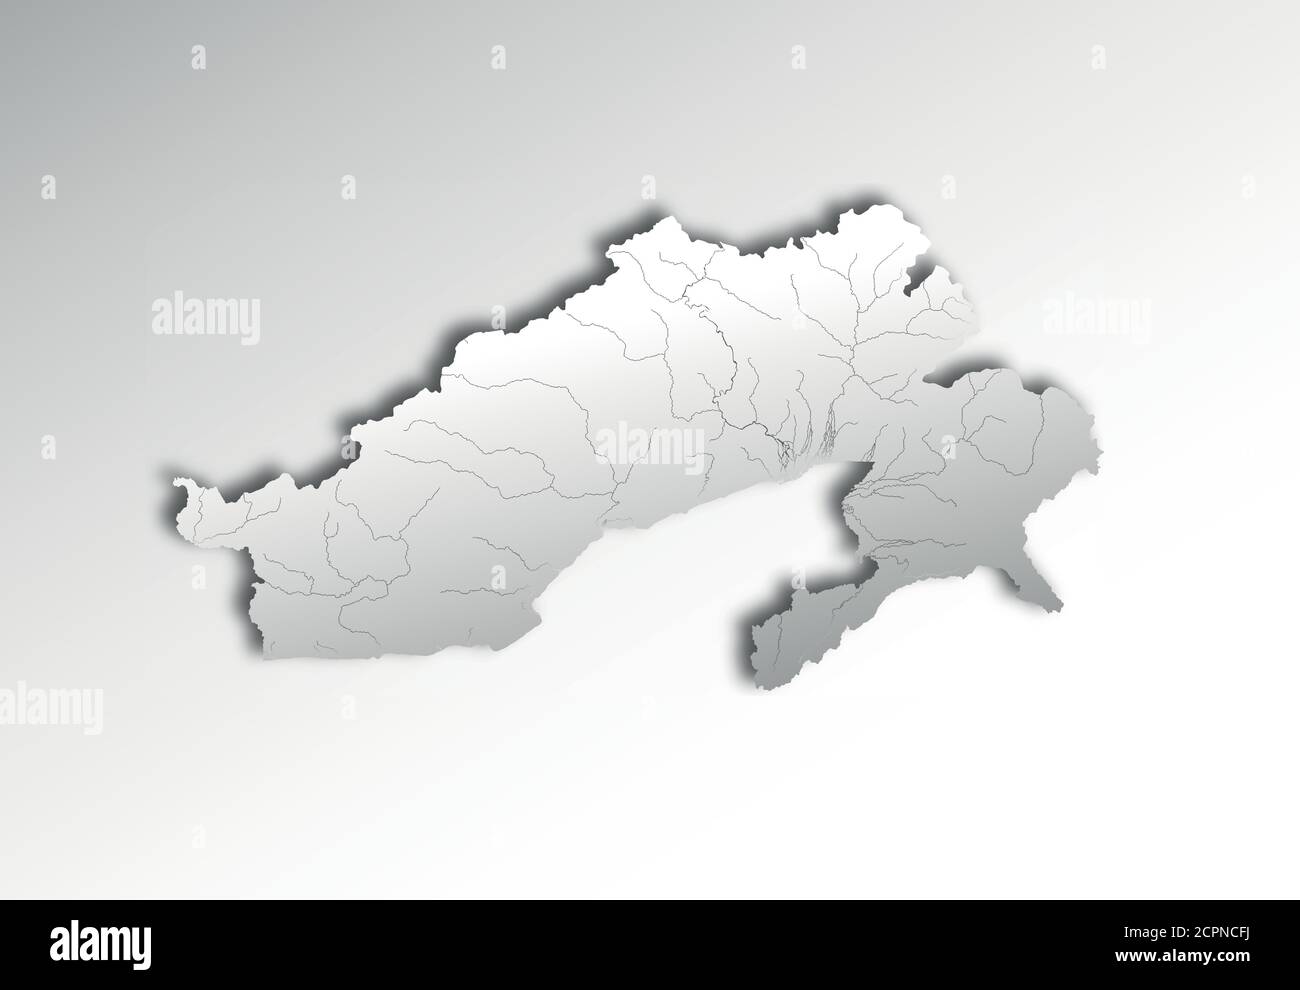 Indien Staaten - Karte von Arunachal Pradesh mit Papierschnitt-Effekt. Flüsse und Seen werden angezeigt. Bitte sehen Sie sich meine anderen Bilder der Kartographie - die an Stock Vektor